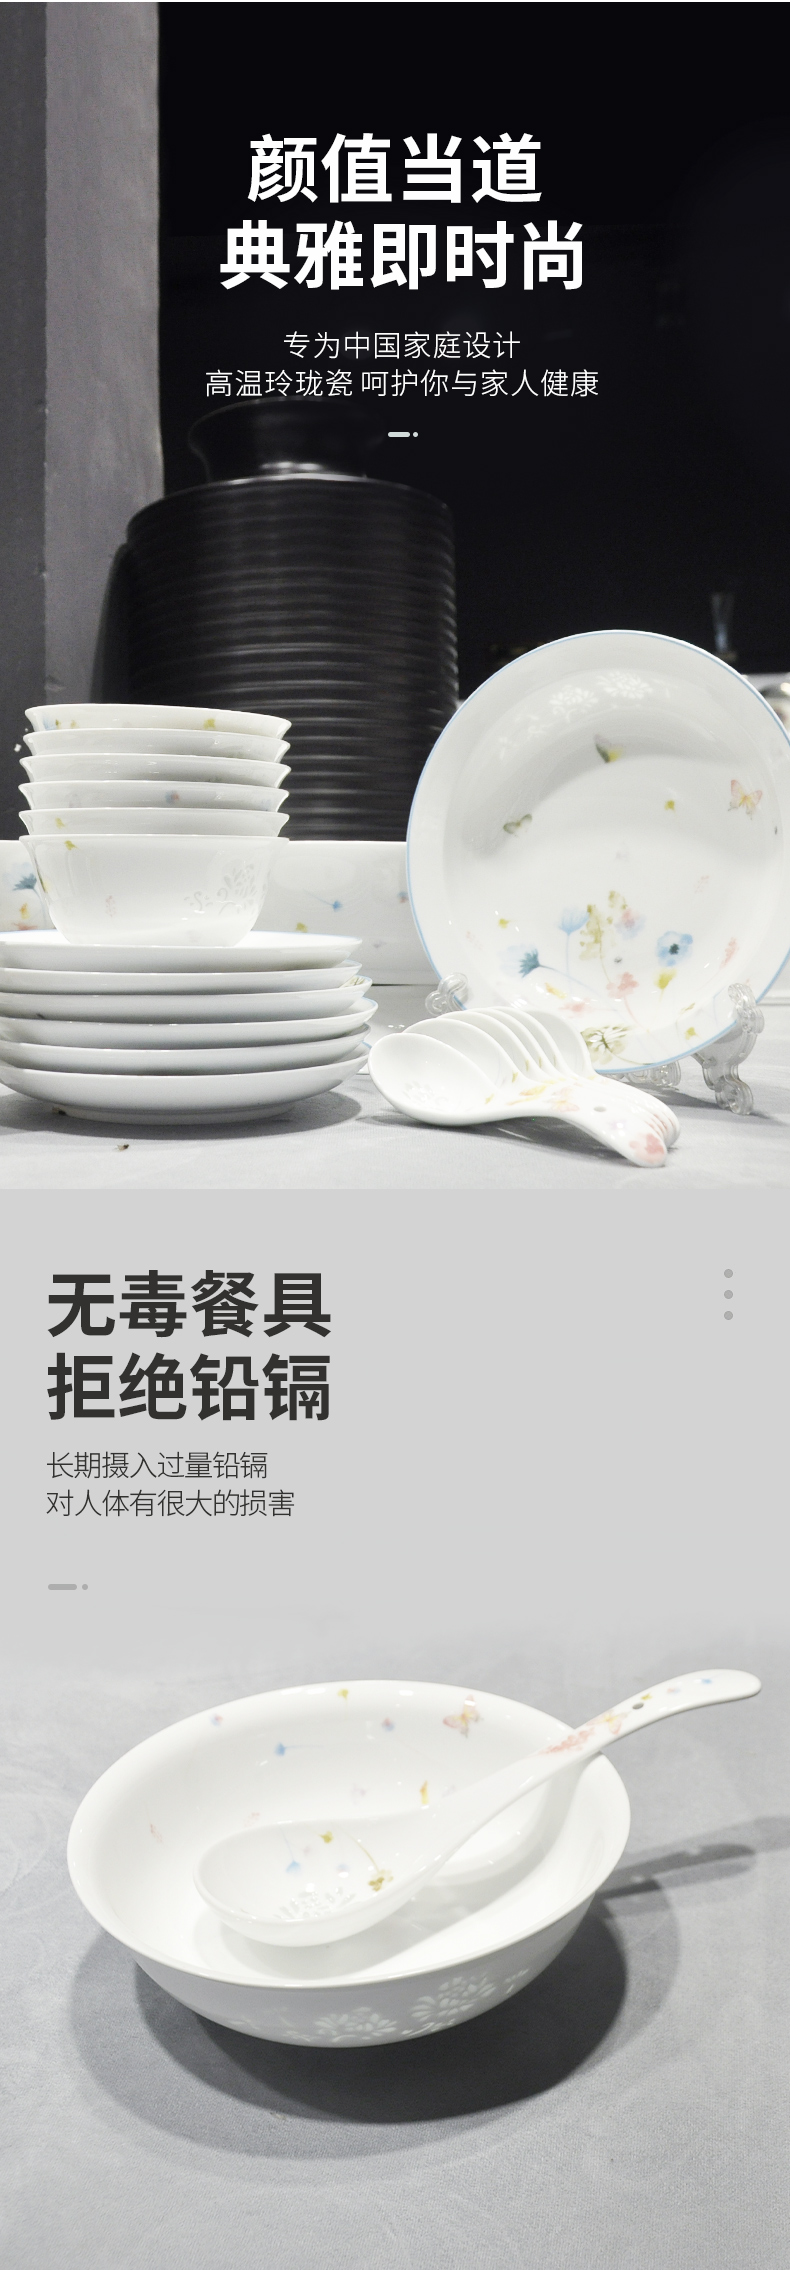 古鎮陶瓷碗碟套裝家用餐具套裝個性創意瓷碗白瓷玲瓏餐具拼盤組合